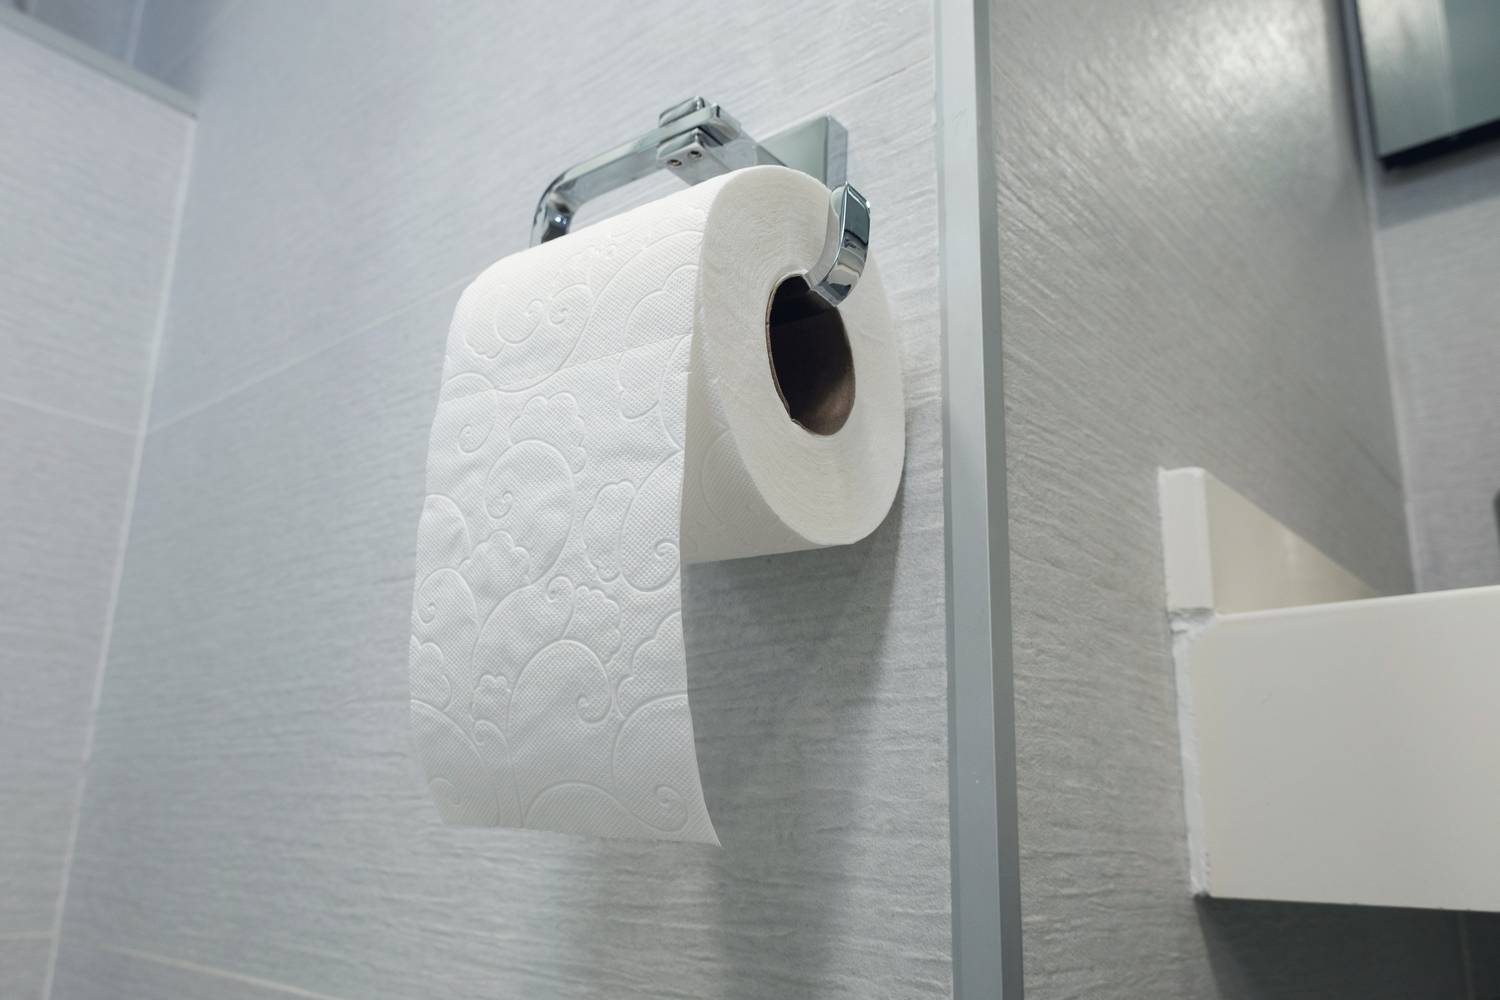 Te a WC-papírt falnak befele vagy kifele aggatod fel? Míg a legtöbben falnak távol rakják fel, egyesek falnak befelé.